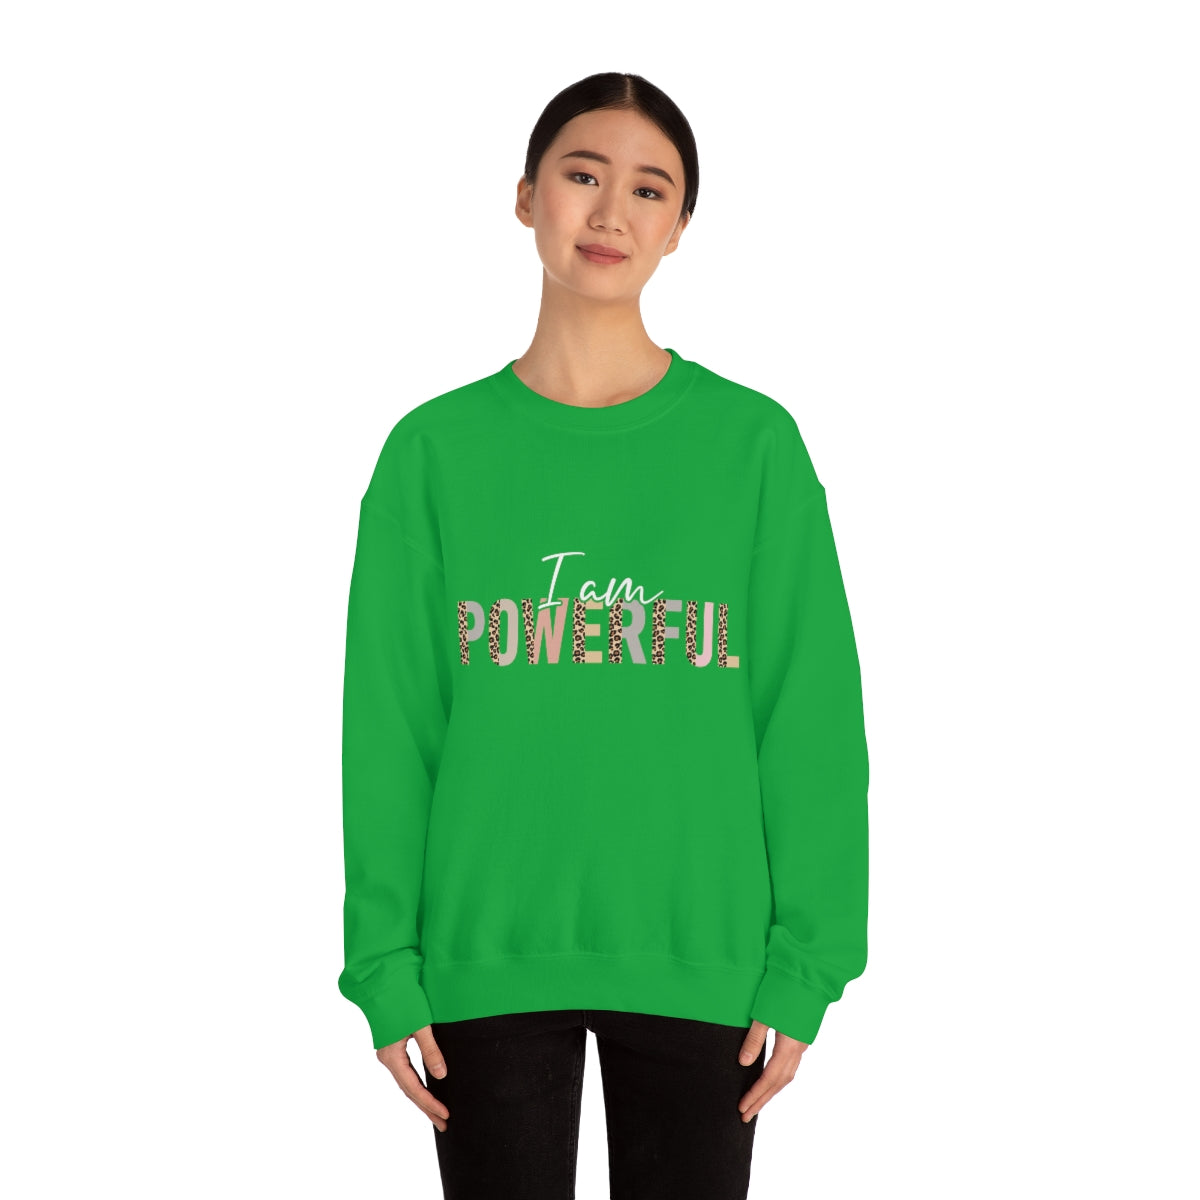 Affirmation Feminist Pro Choice Sweatshirt Unisex  Size – I Am Powerful Printify